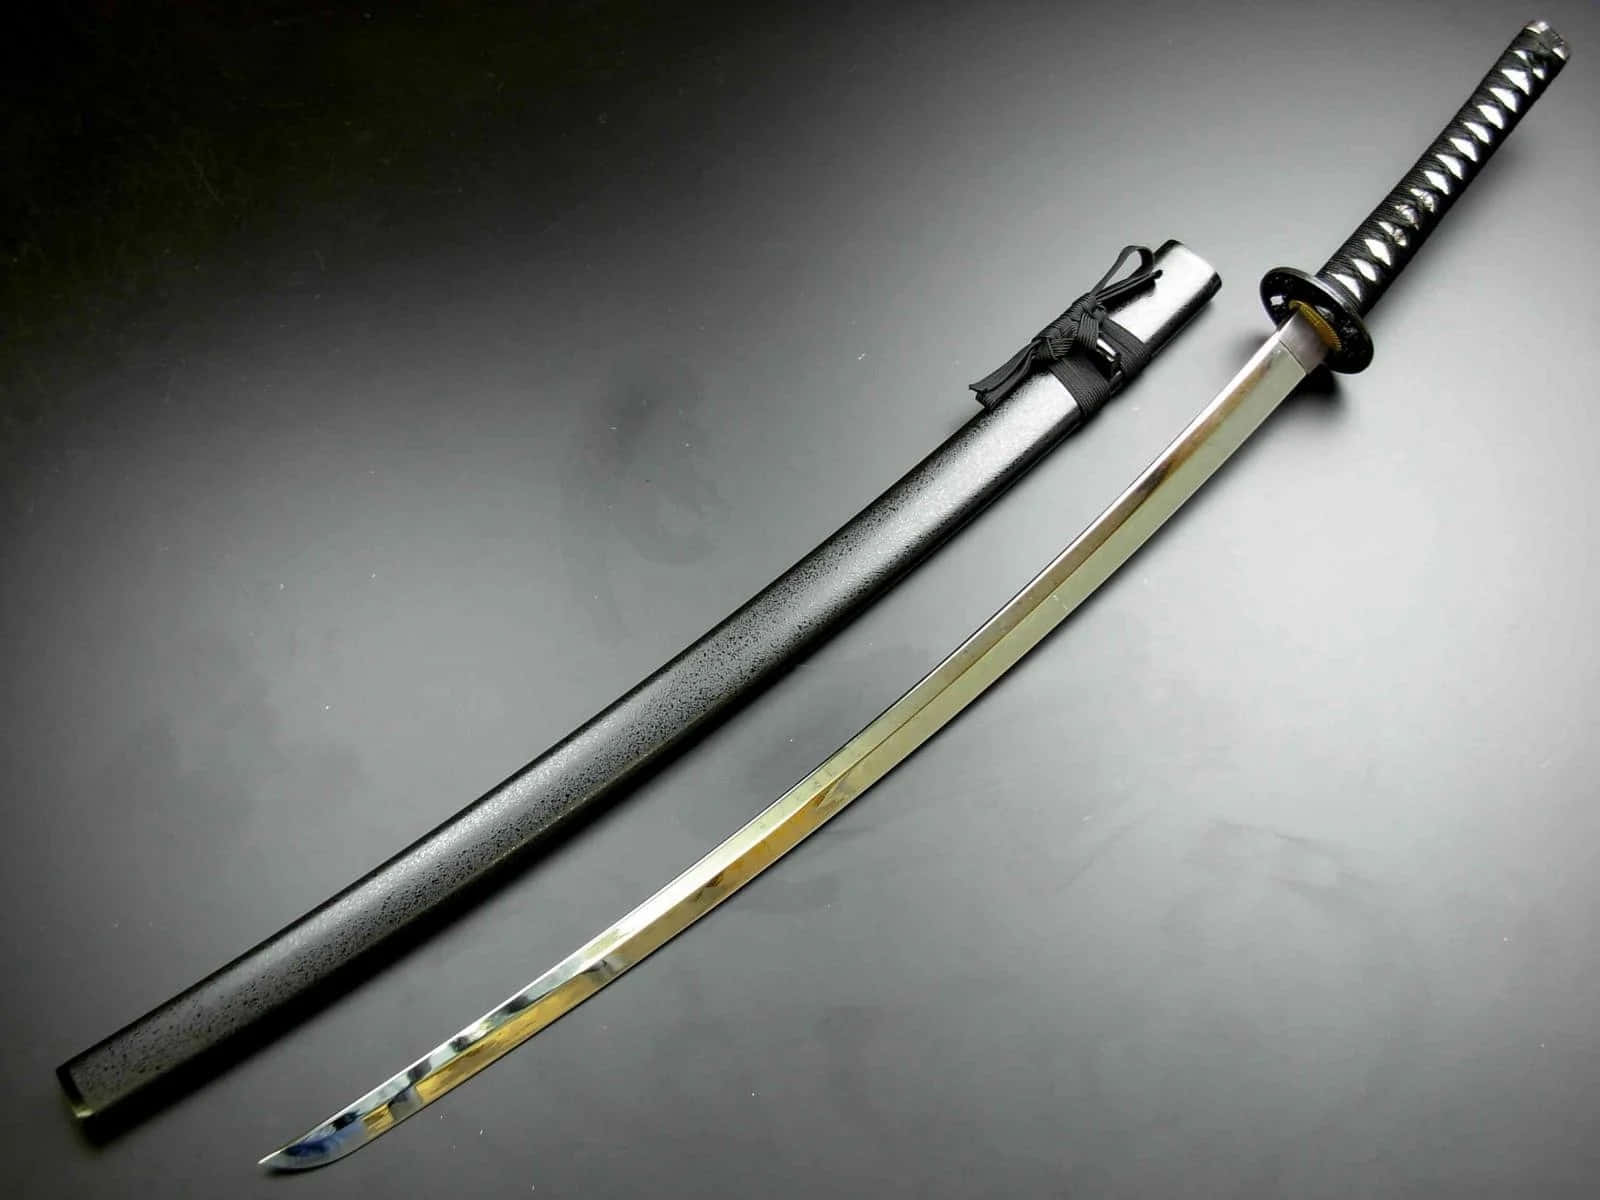 Powerful Samurai Sword in Focus Wallpaper